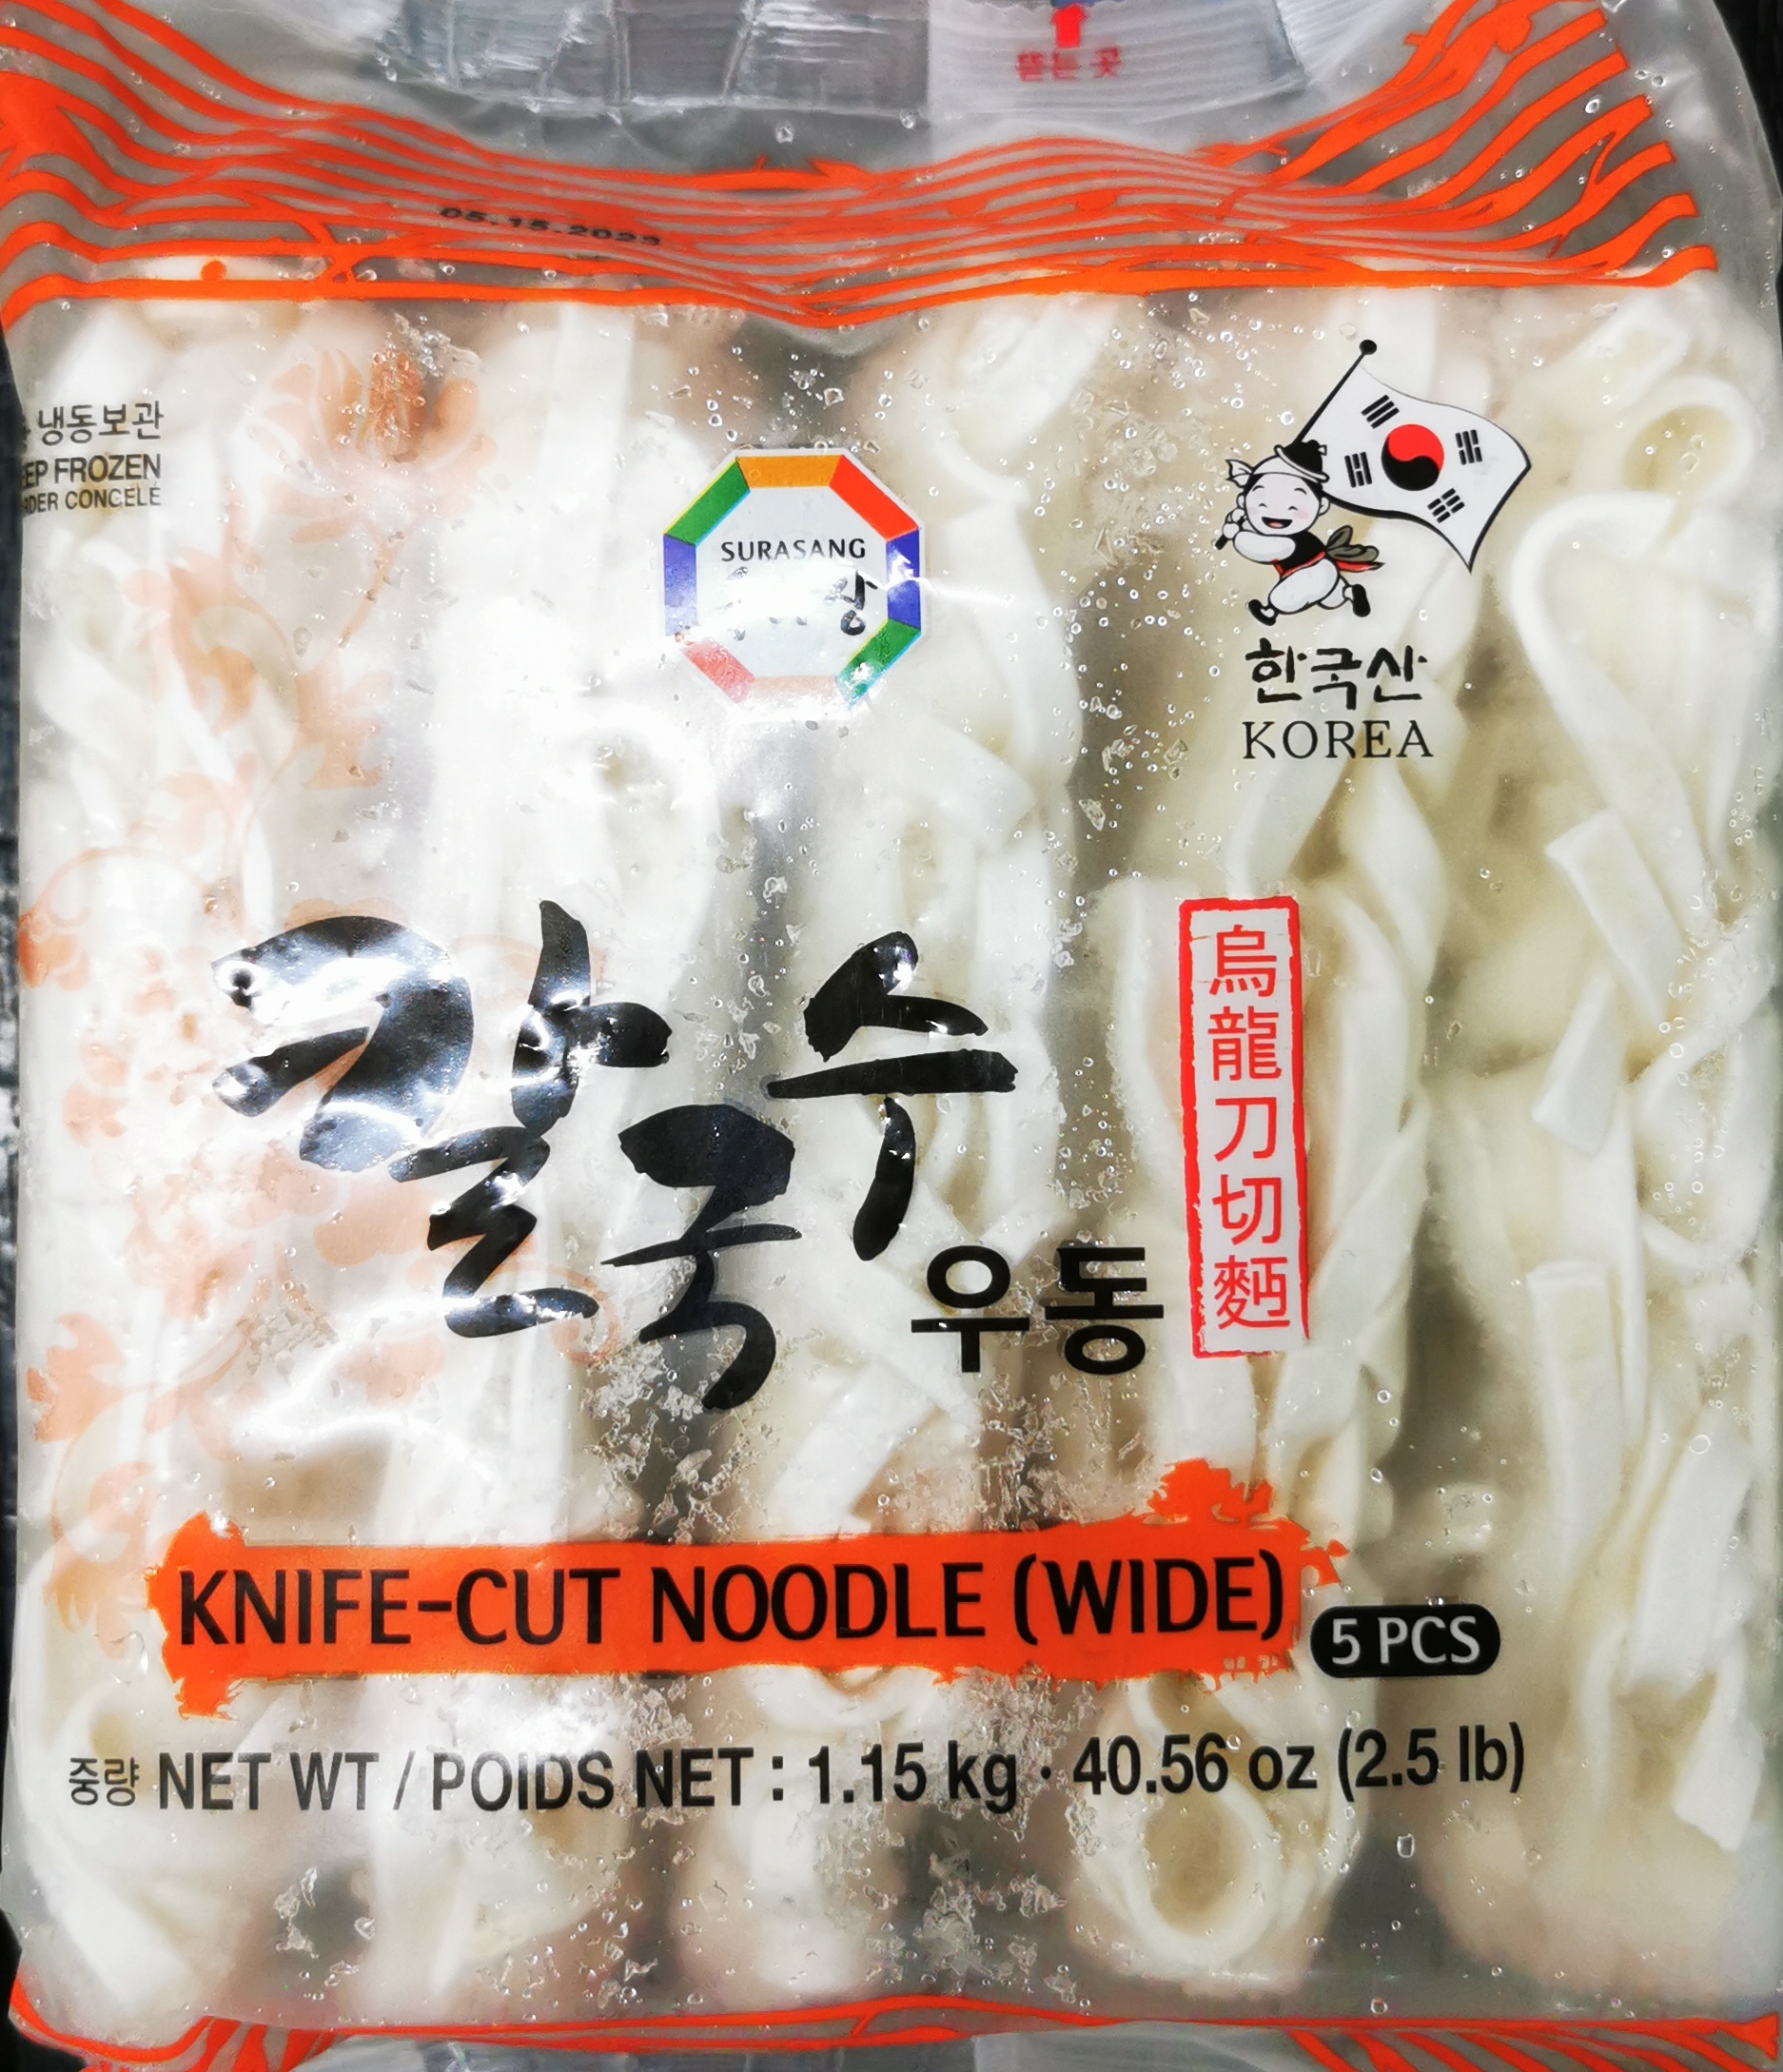 Noodle knife-cut 1.15kg